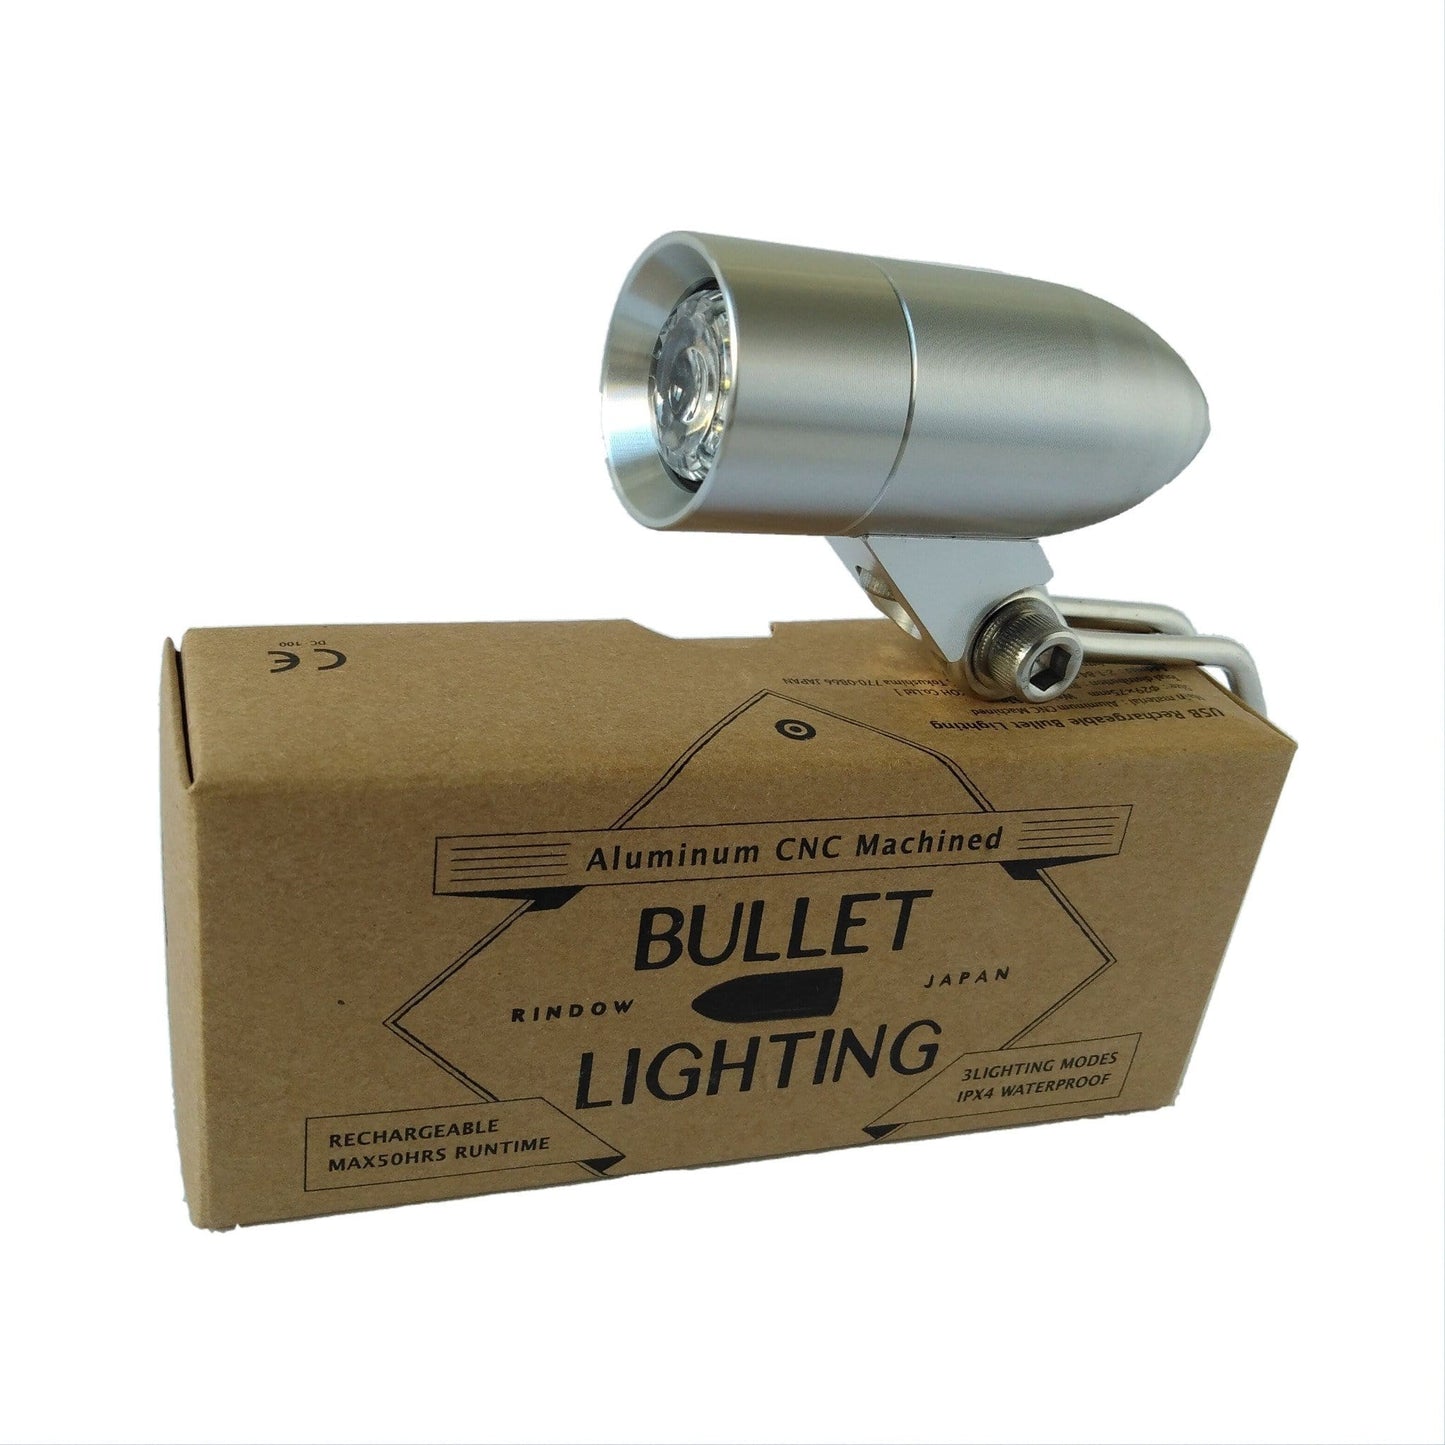 Rindow Bullet Lighting bike light on retail box